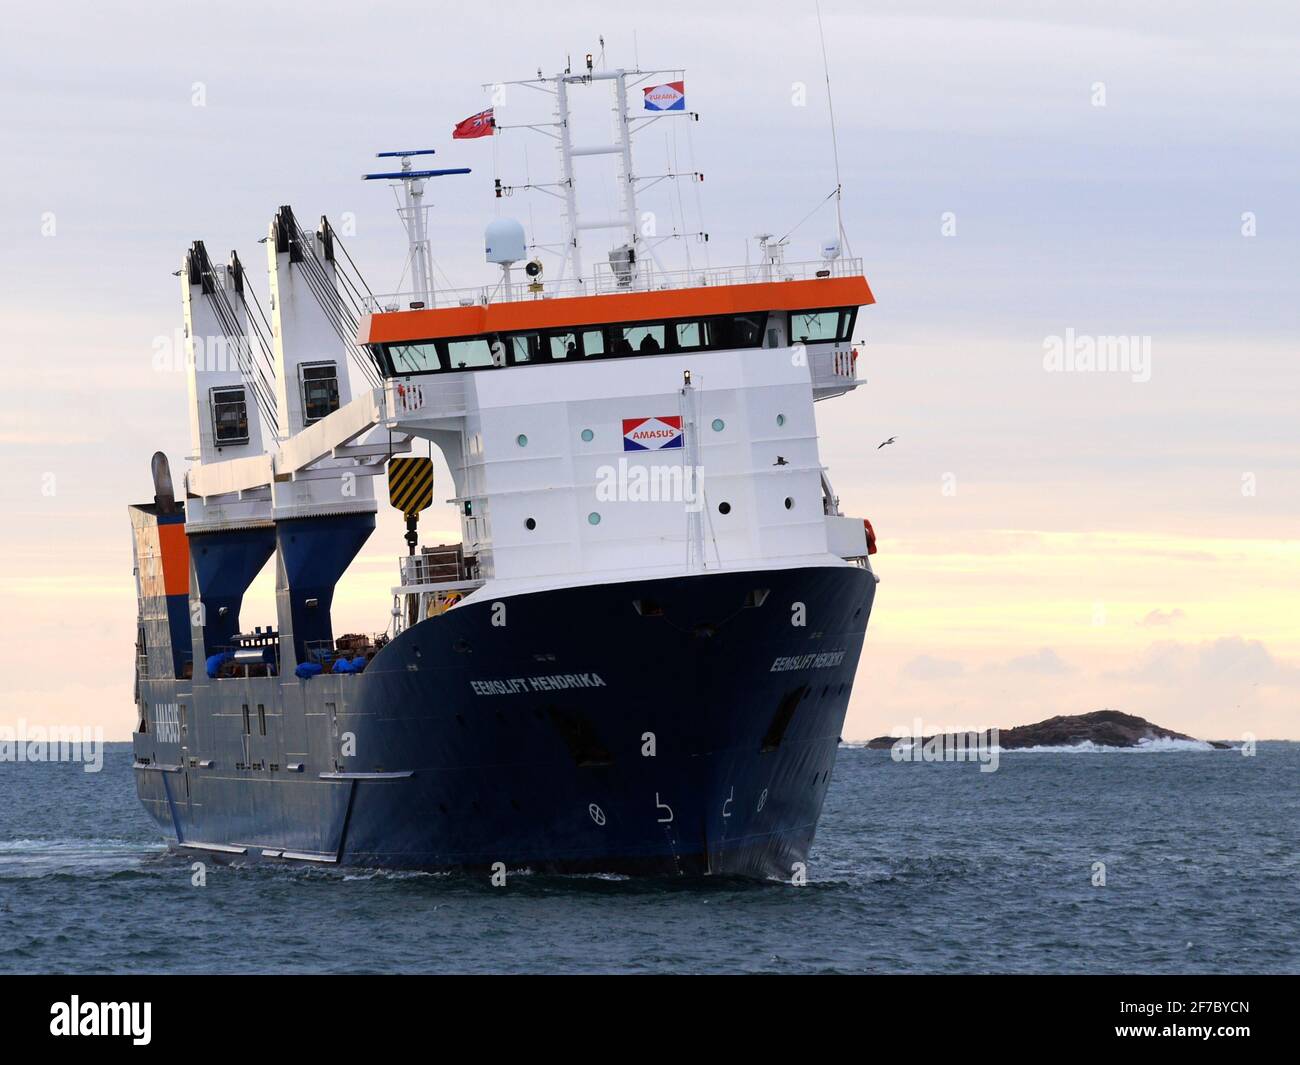 Eemslift Hendrika ship Stock Photo